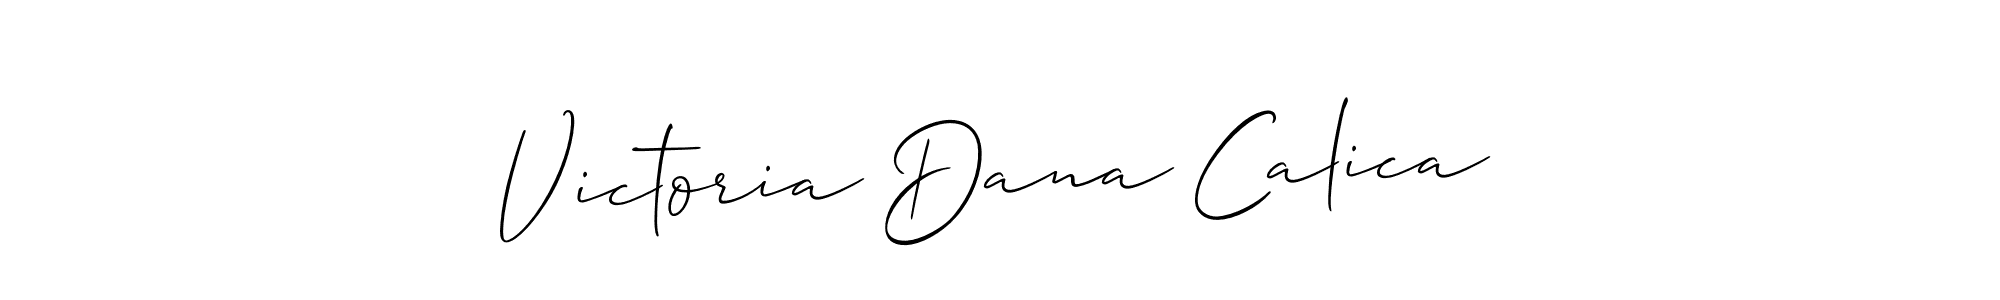 How to Draw Victoria Dana Calica signature style? Allison_Script is a latest design signature styles for name Victoria Dana Calica. Victoria Dana Calica signature style 2 images and pictures png